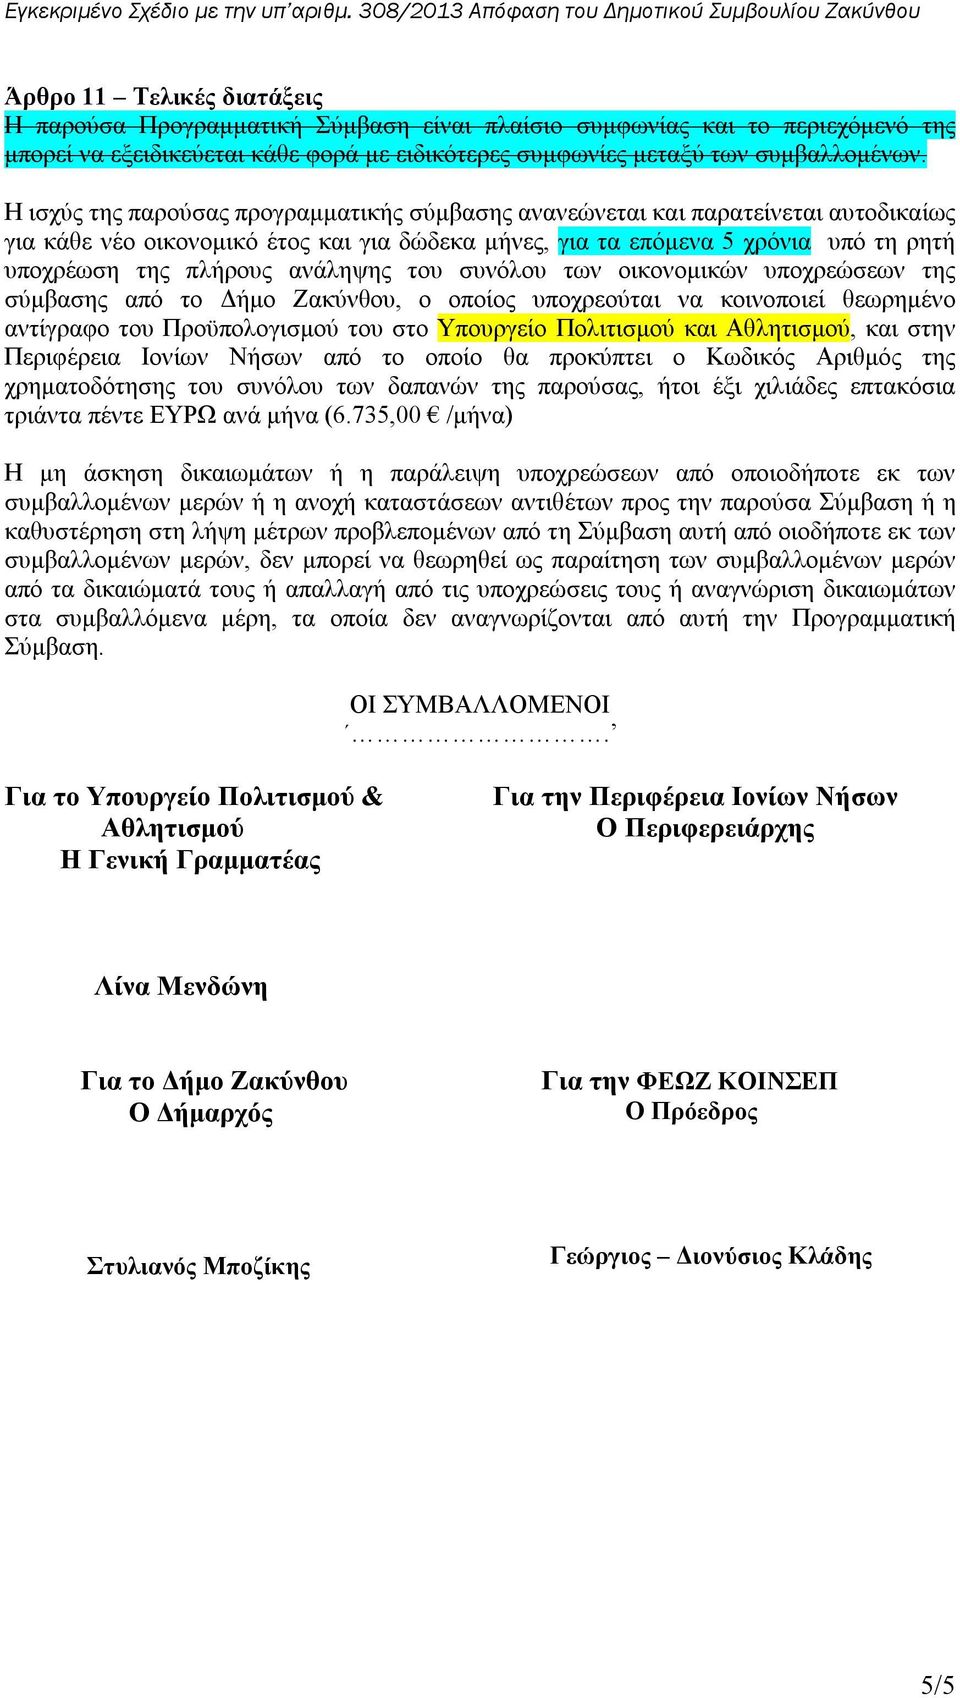 ανάληψης του συνόλου των οικονομικών υποχρεώσεων της σύμβασης από το Δήμο Ζακύνθου, ο οποίος υποχρεούται να κοινοποιεί θεωρημένο αντίγραφο του Προϋπολογισμού του στο Υπουργείο Πολιτισμού και